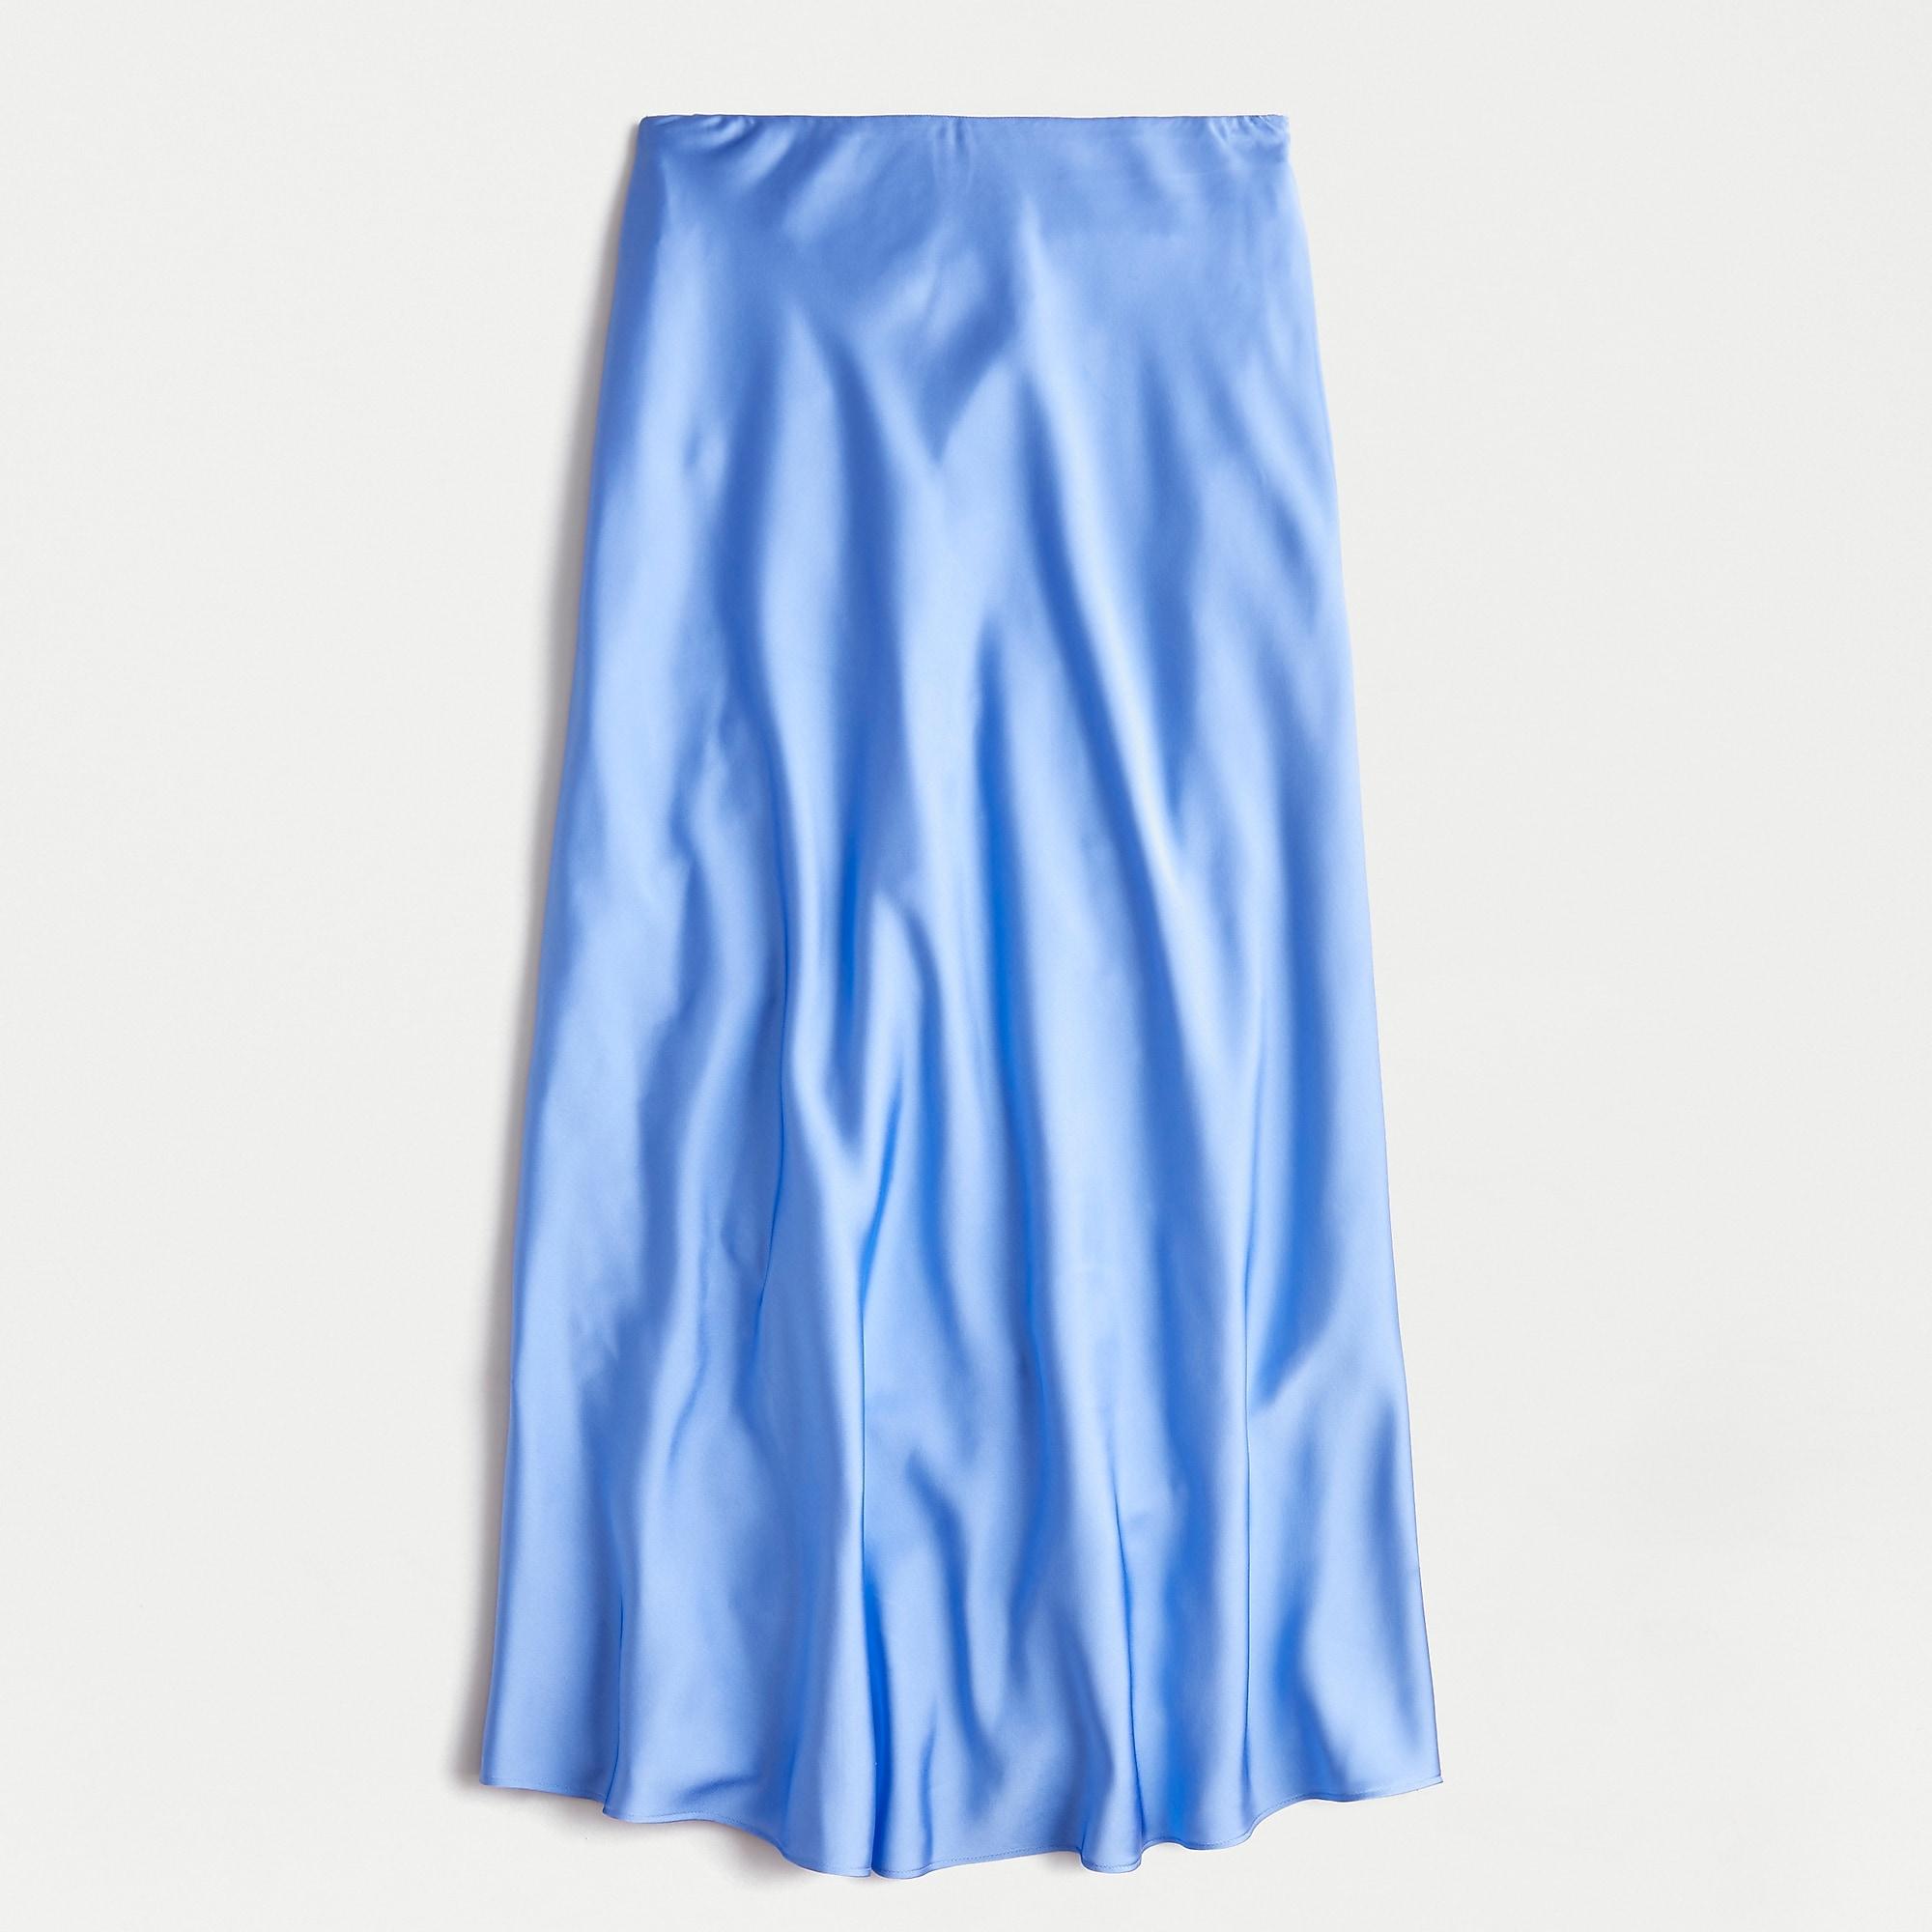 J.Crew Pull-on Slip Skirt in Blue - Lyst